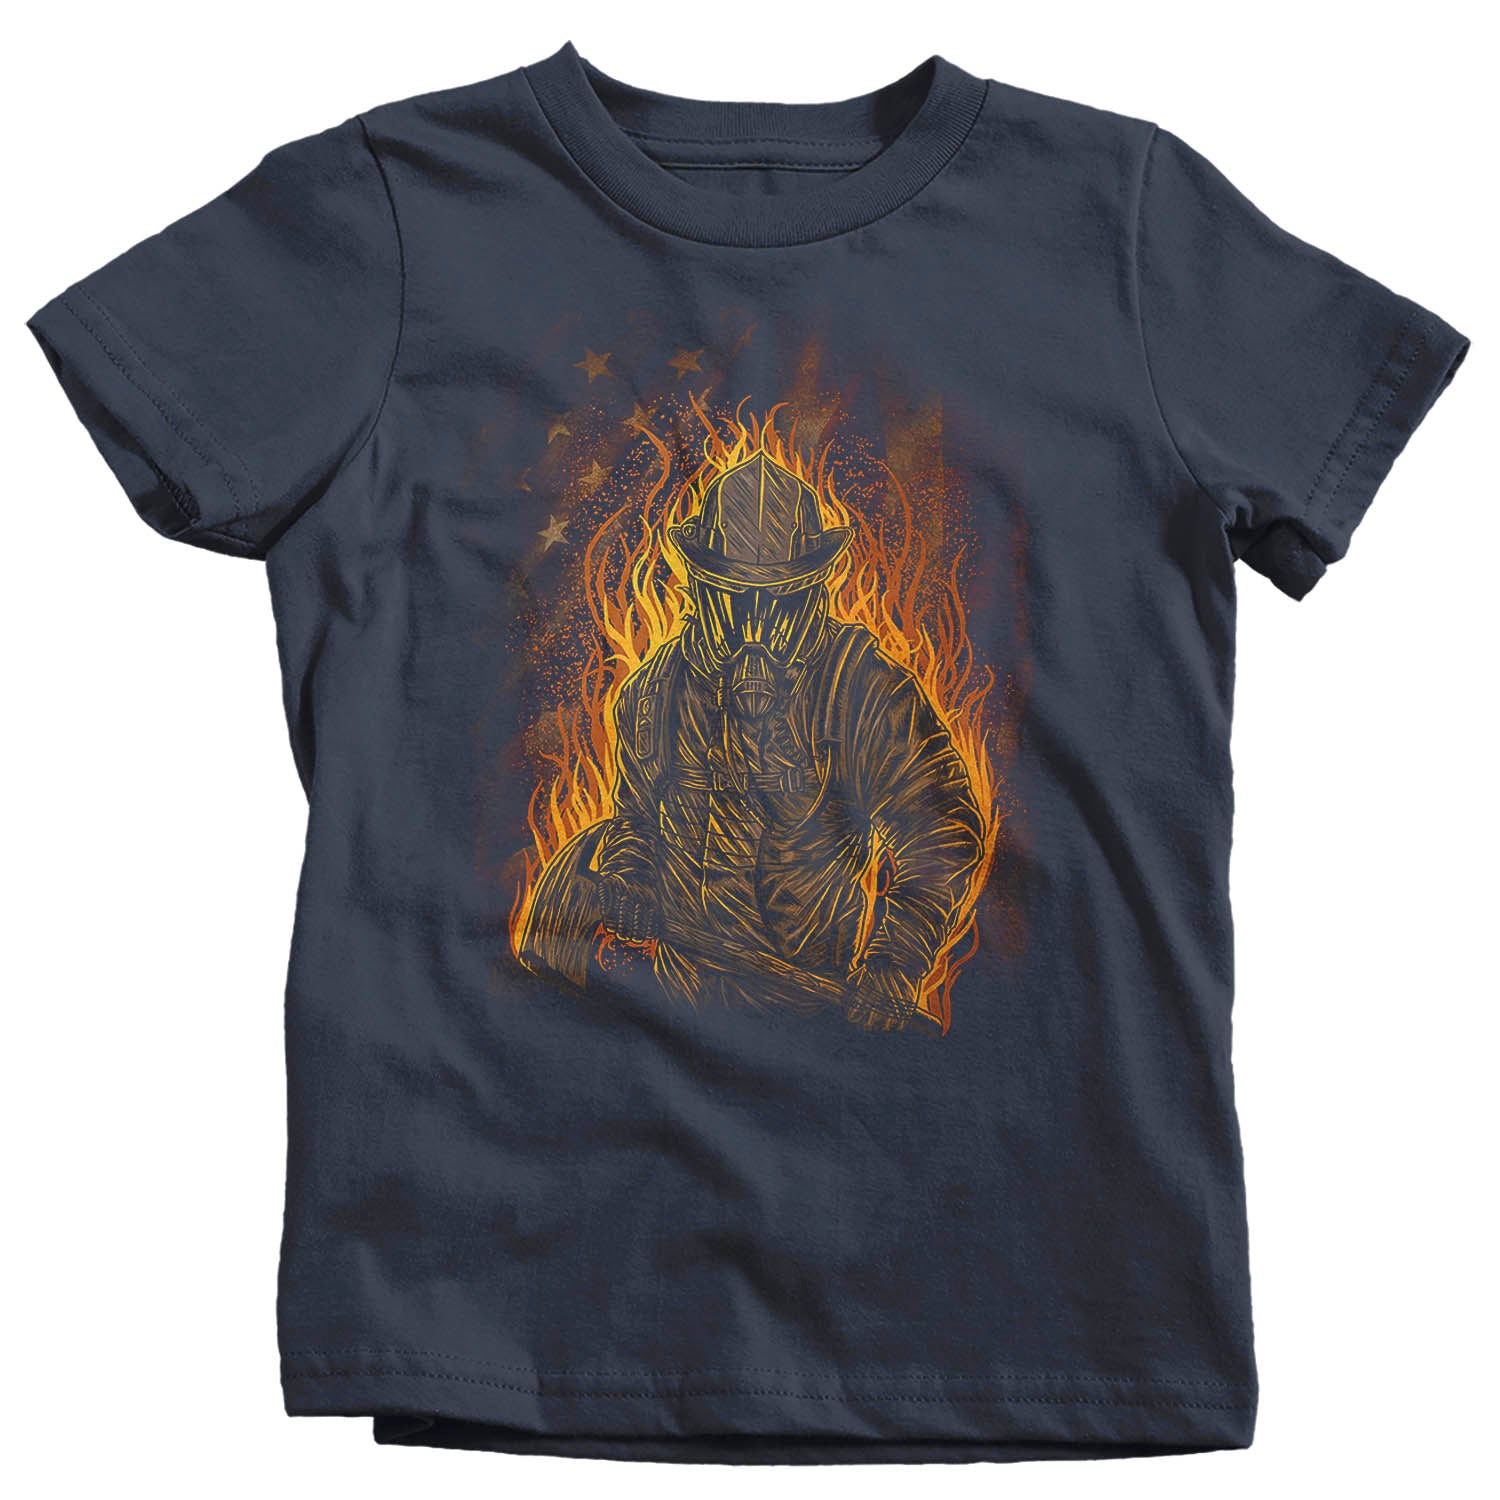 Kids Firefighter Shirt Cool Firefighter T Shirt Gift Idea Flames